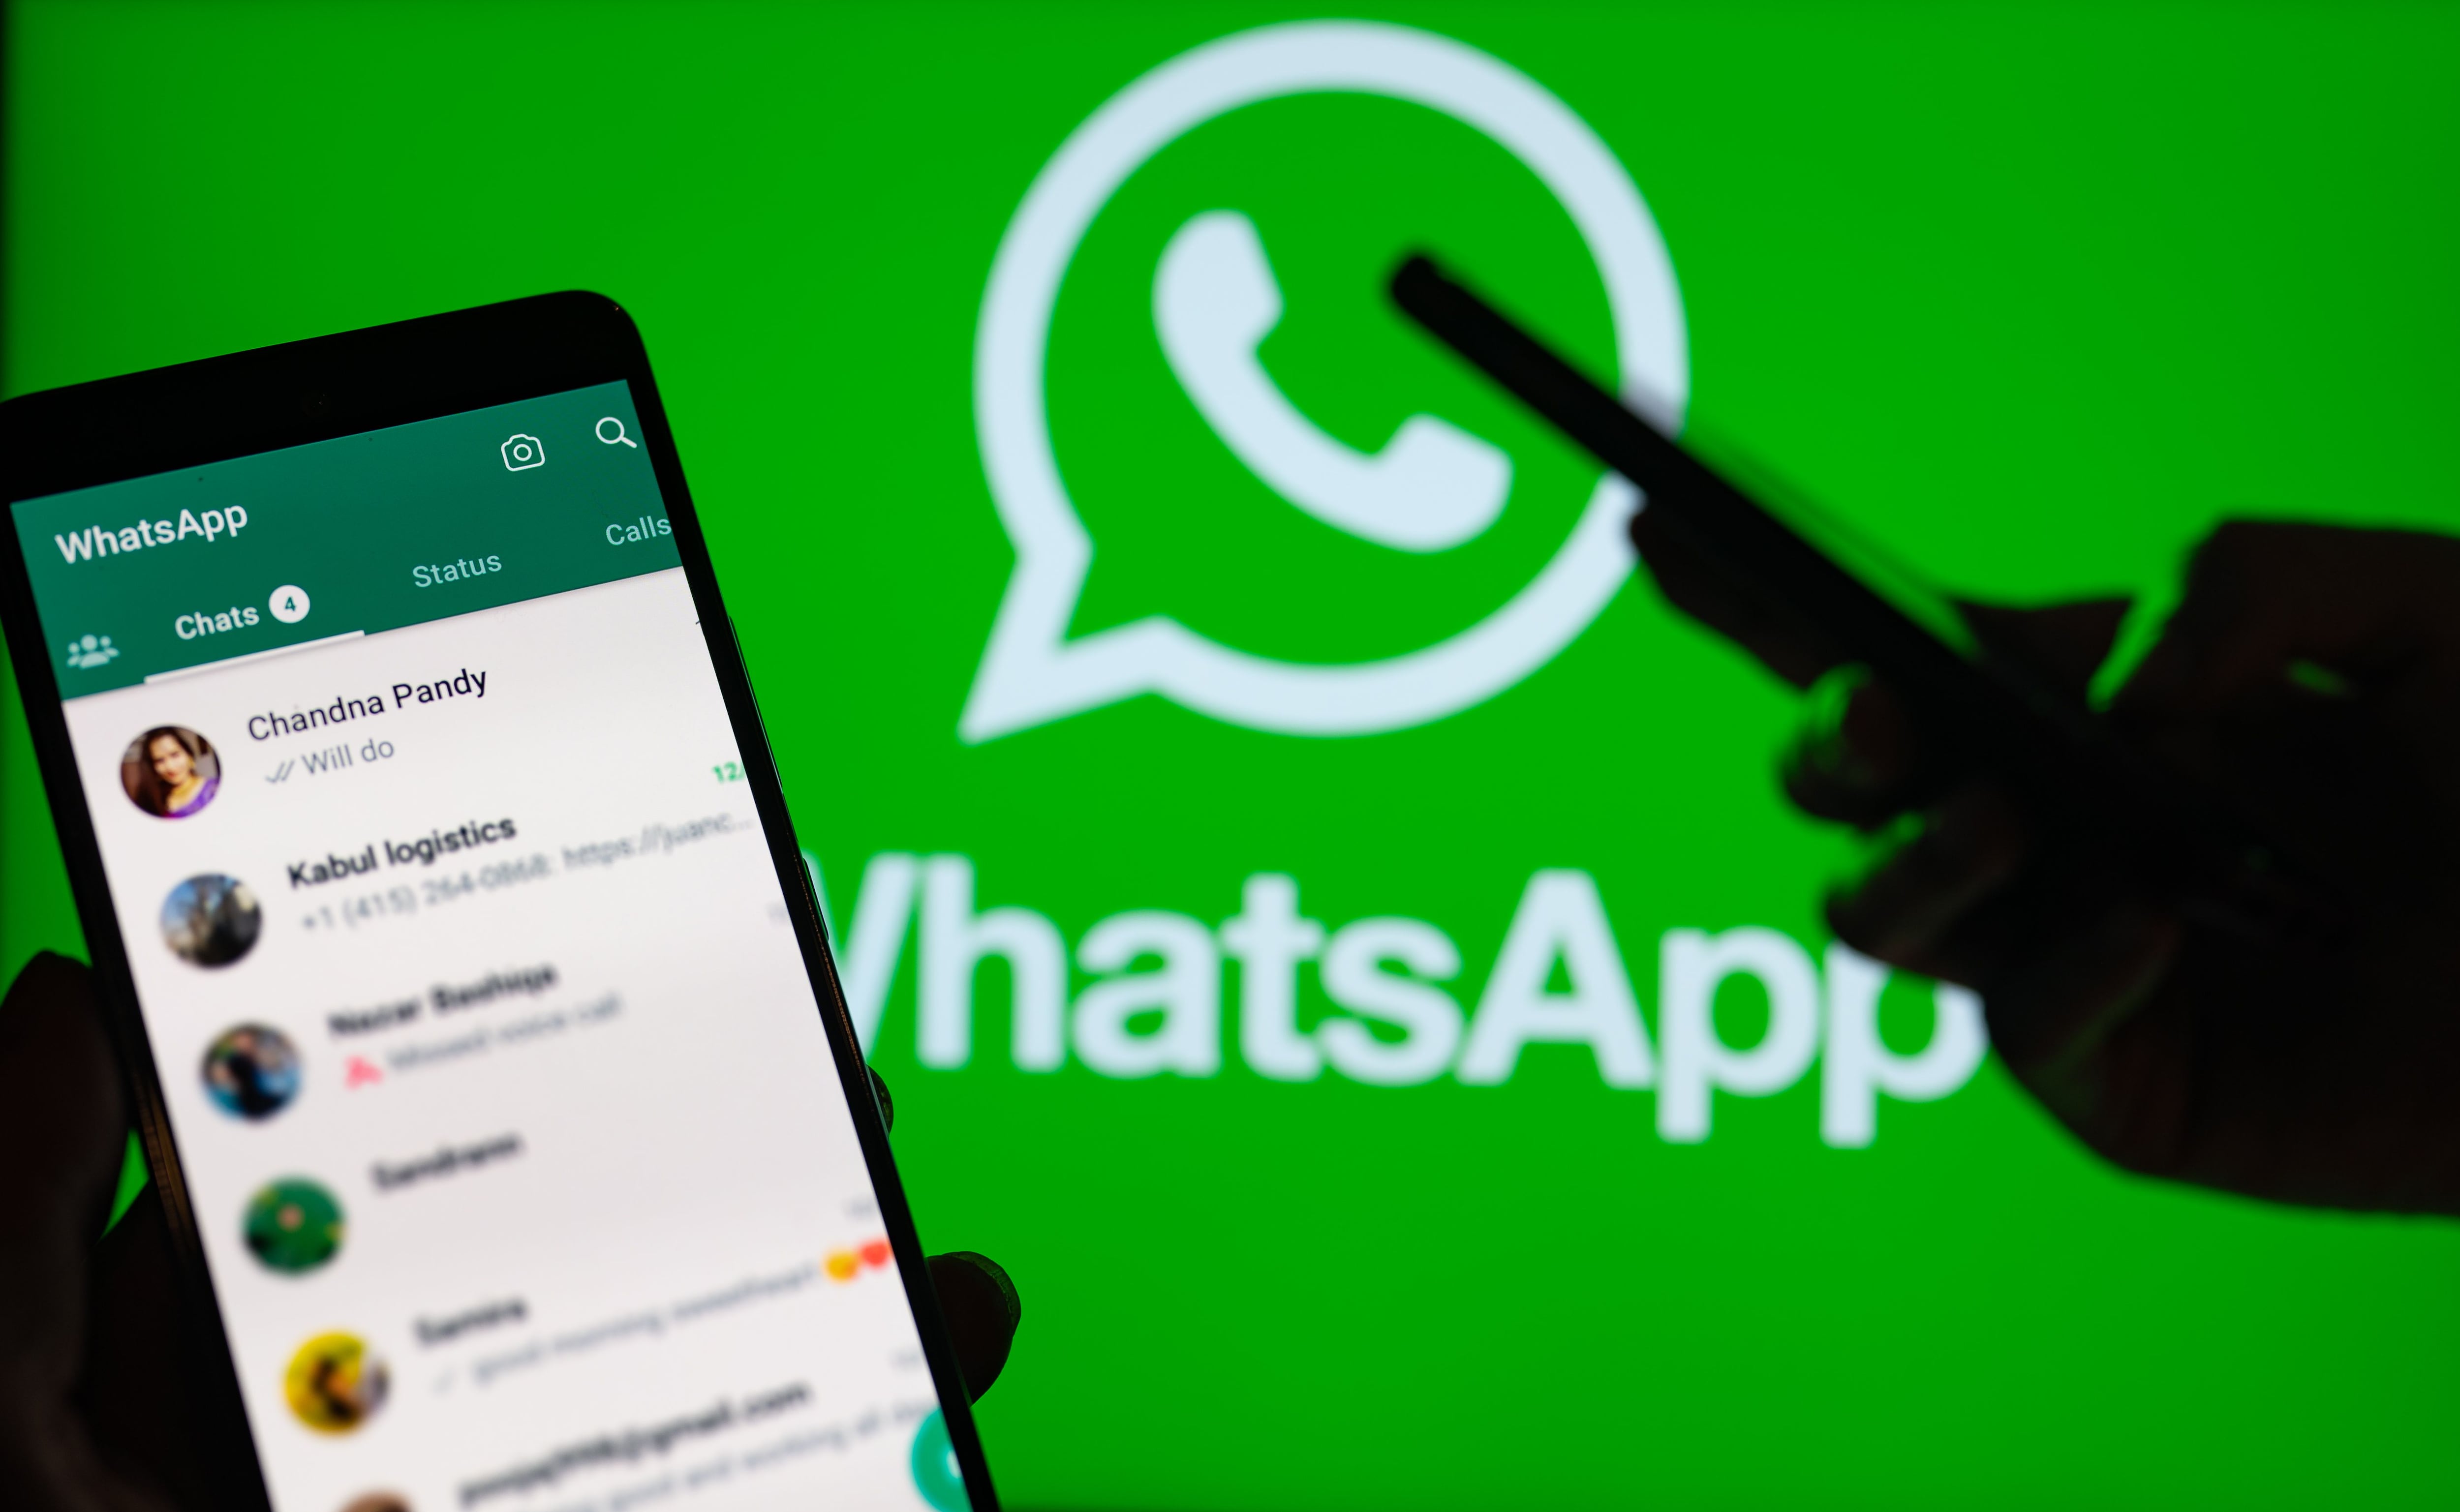 Sorpresa! WhatsApp permitirá dictar mensajes en las gafas inteligentes, Lifestyle